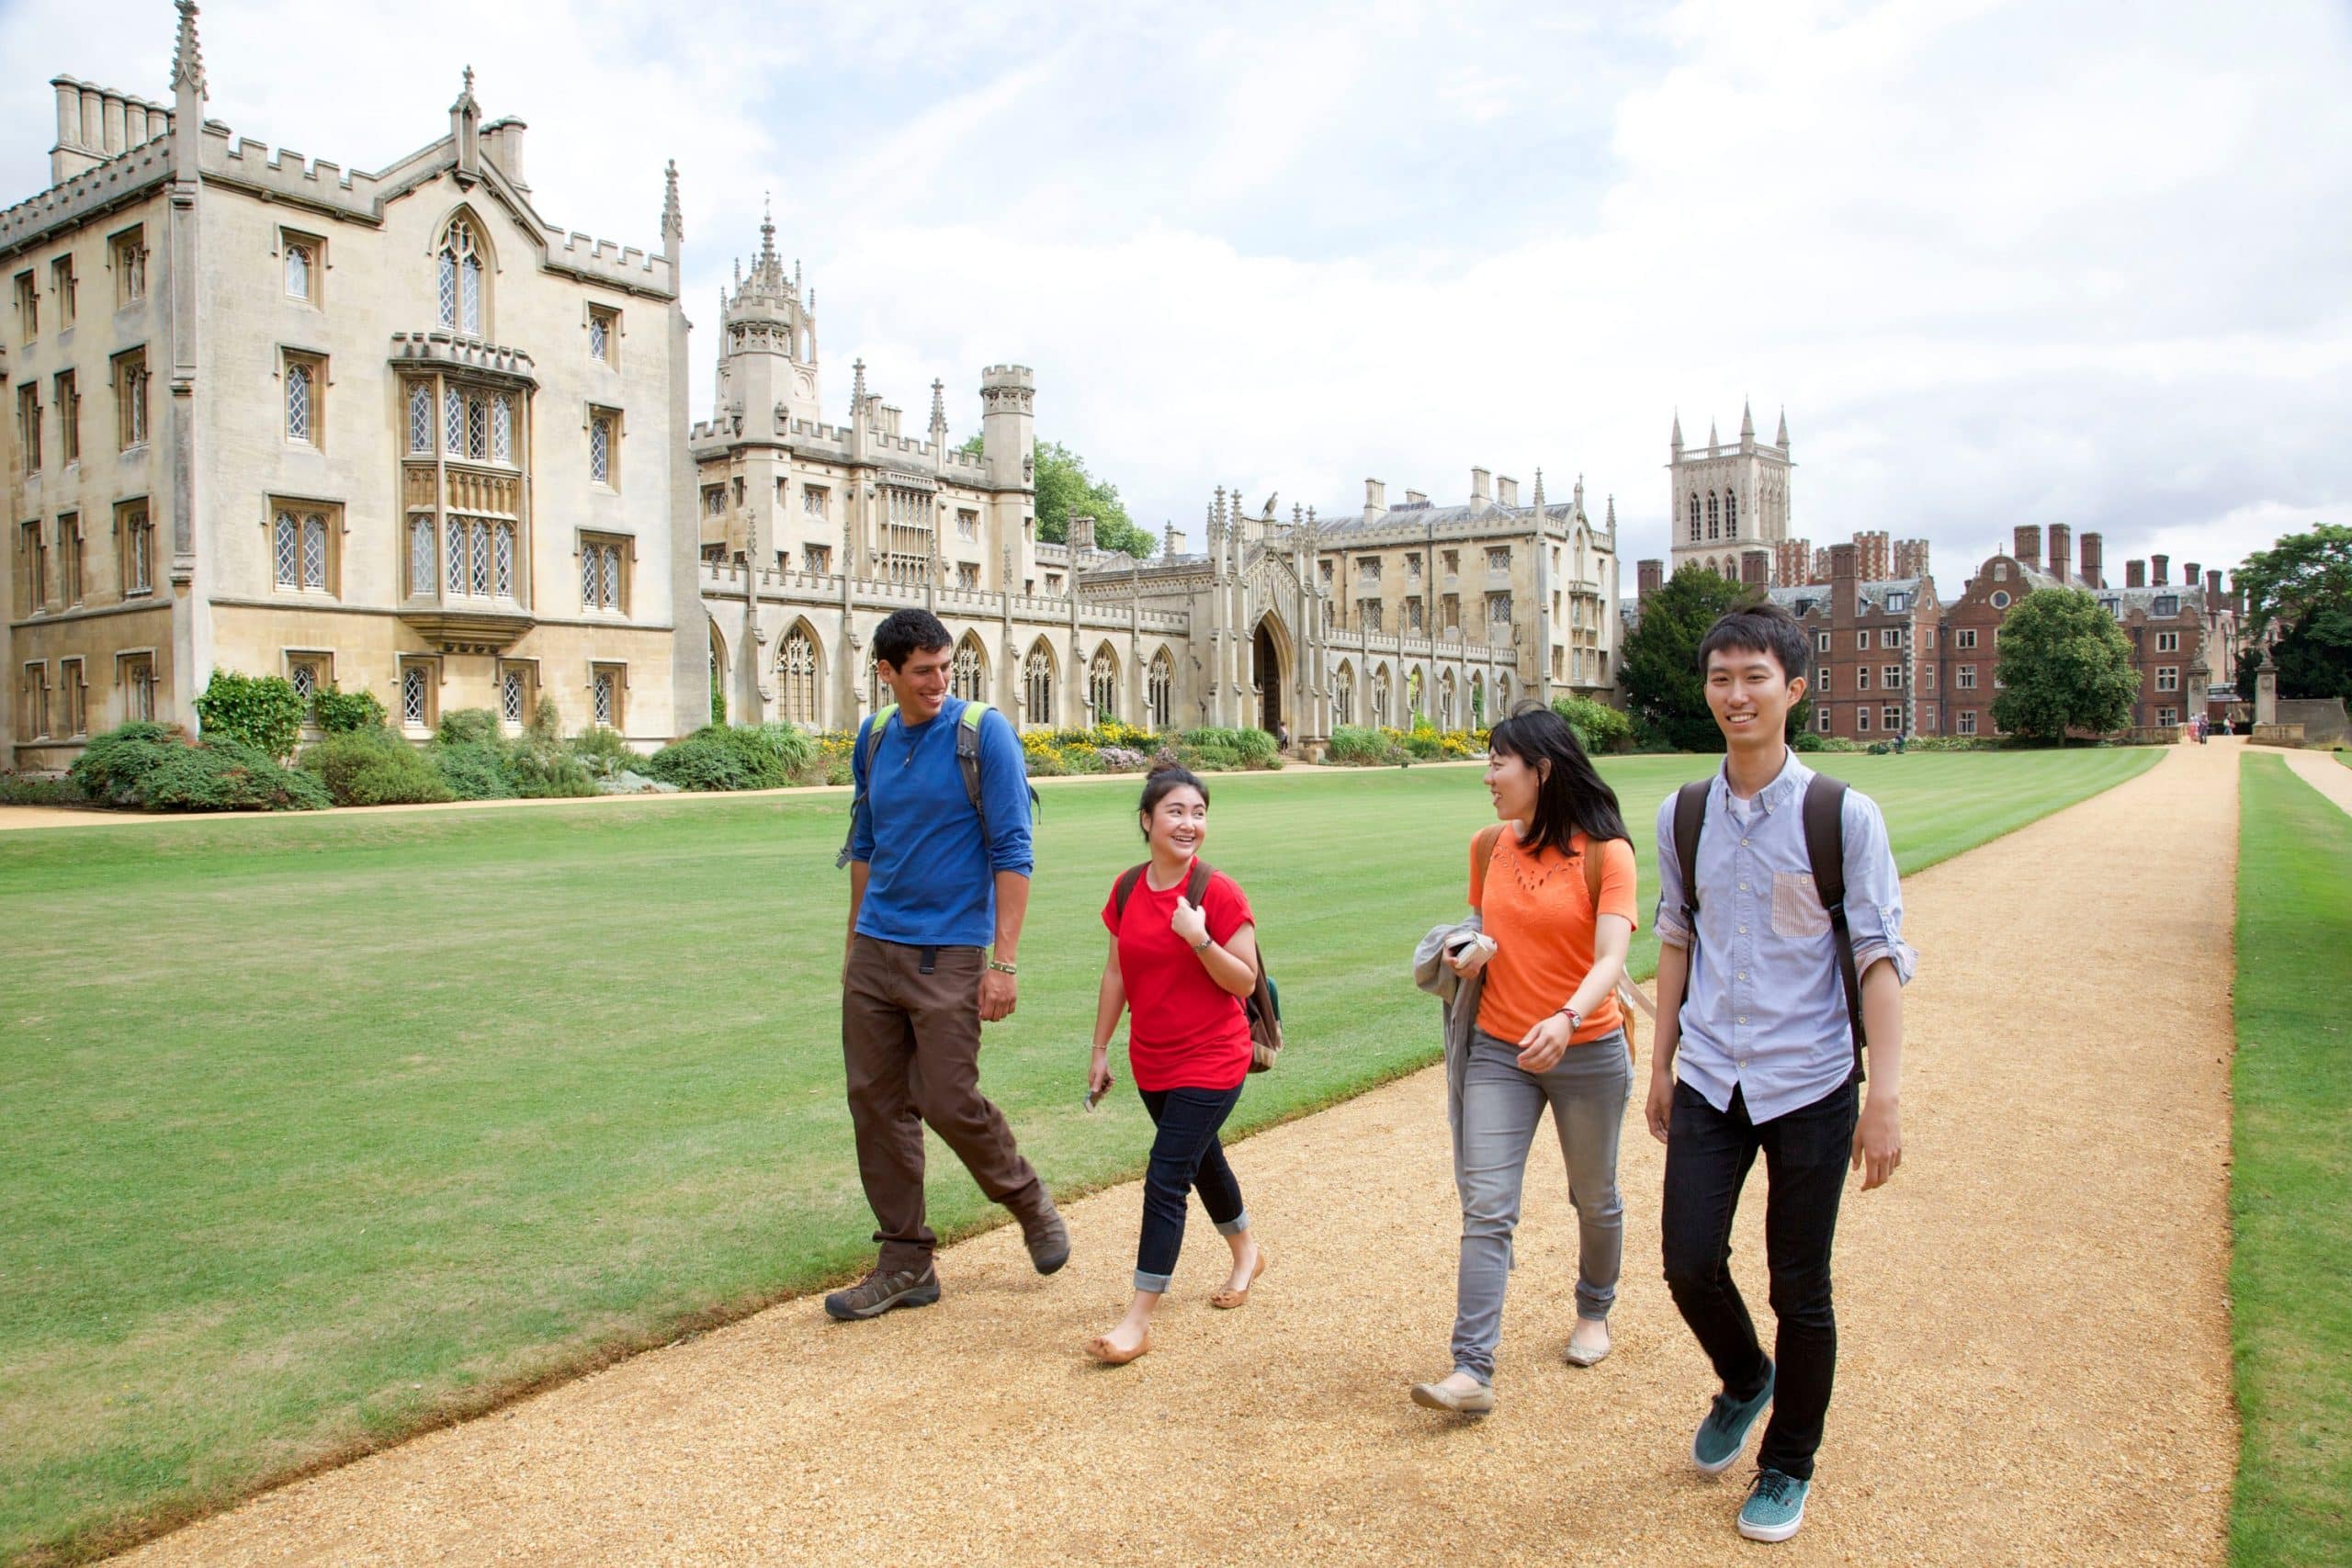 Etudiants internationaux se promenant à Cambridge en Angleterre